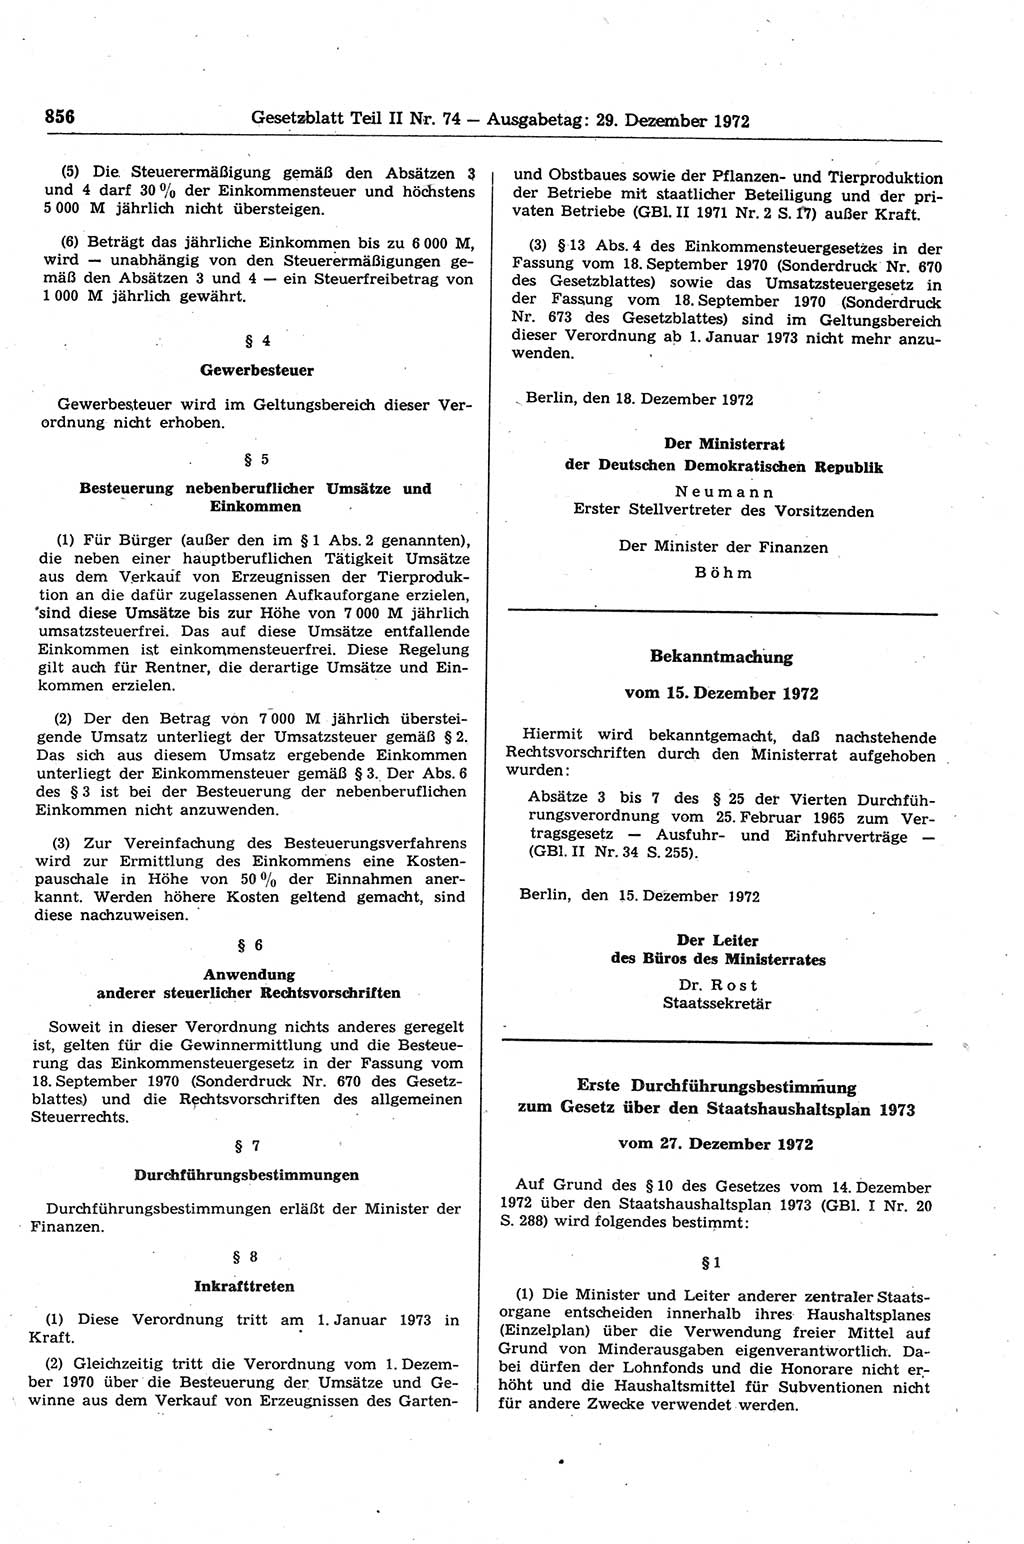 Gesetzblatt (GBl.) der Deutschen Demokratischen Republik (DDR) Teil ⅠⅠ 1972, Seite 856 (GBl. DDR ⅠⅠ 1972, S. 856)